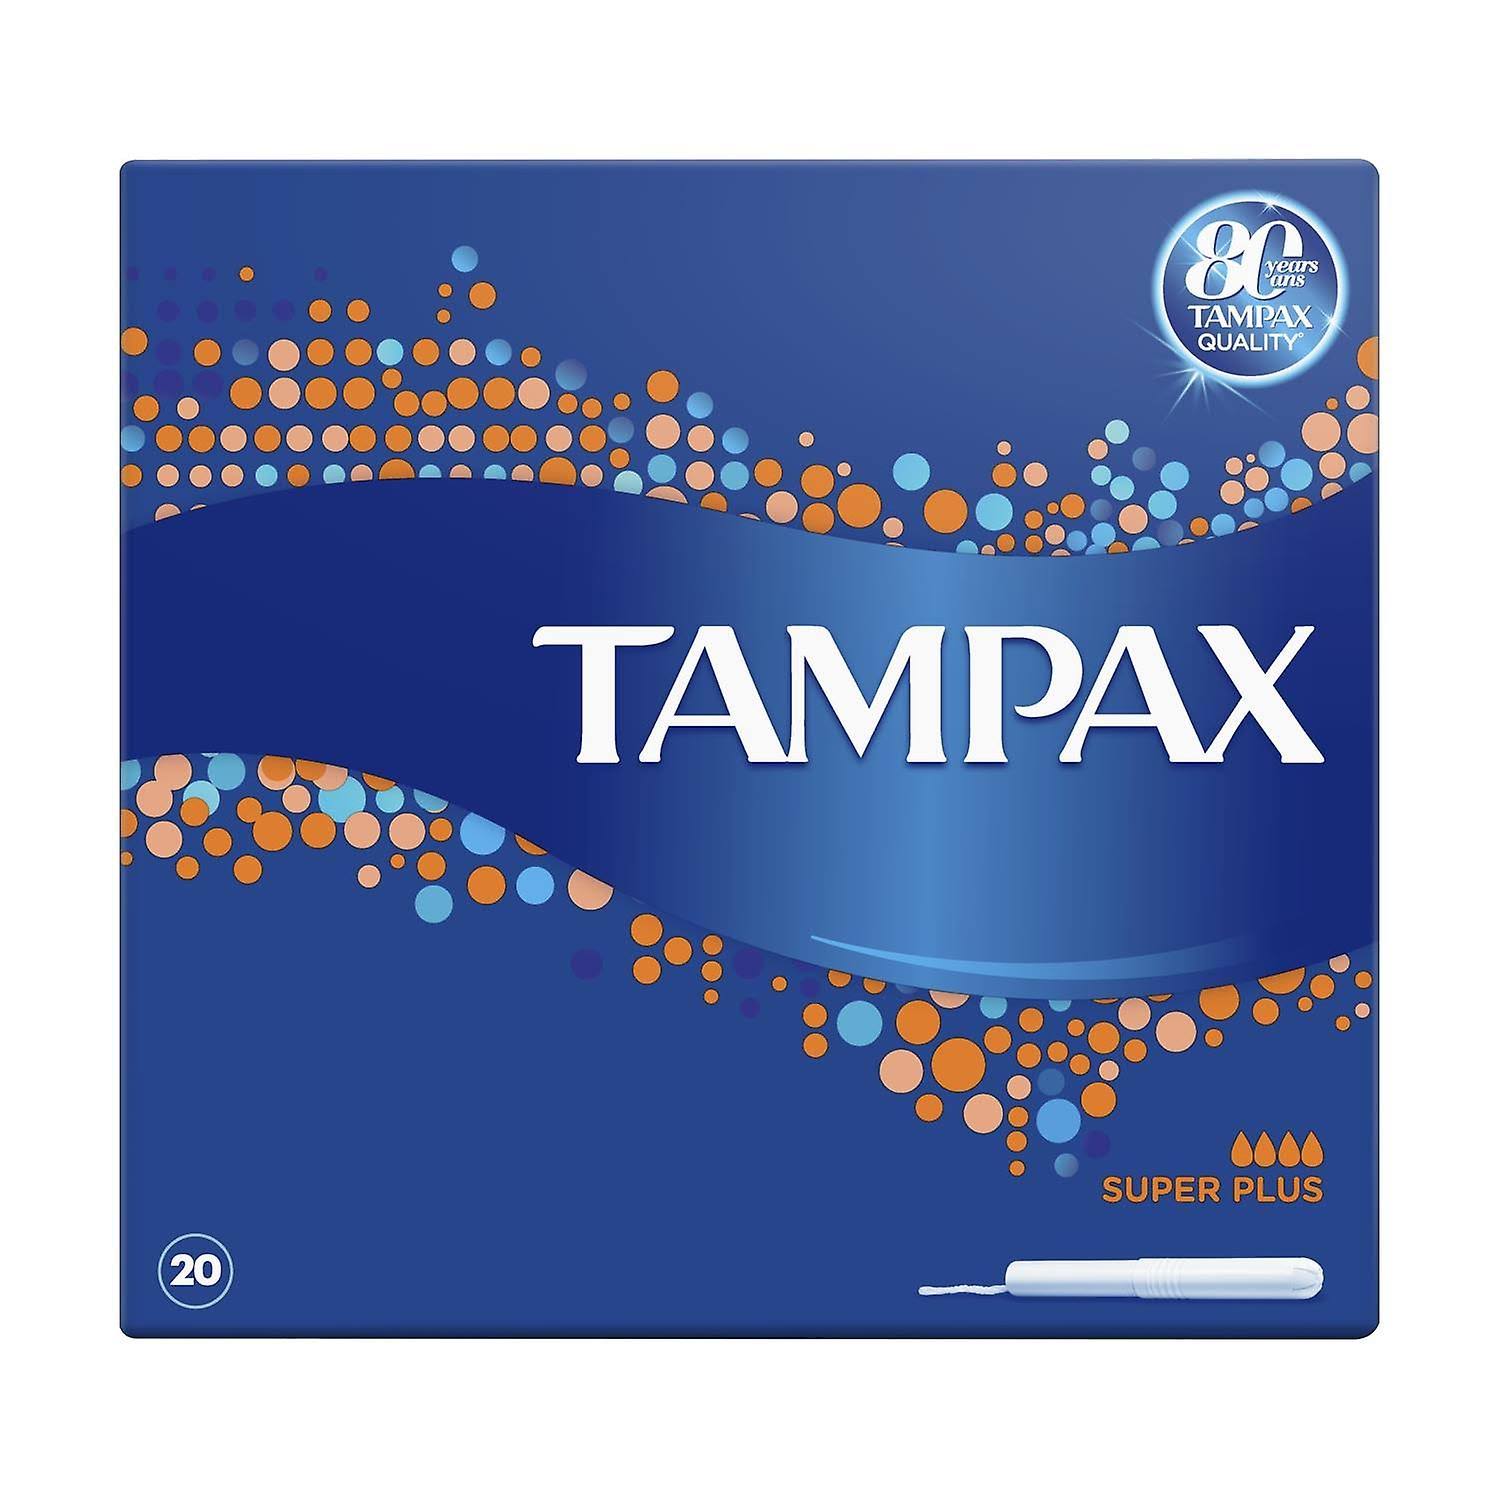 Tampax Super Plus Tampons Applicator Cardboard - 20pk